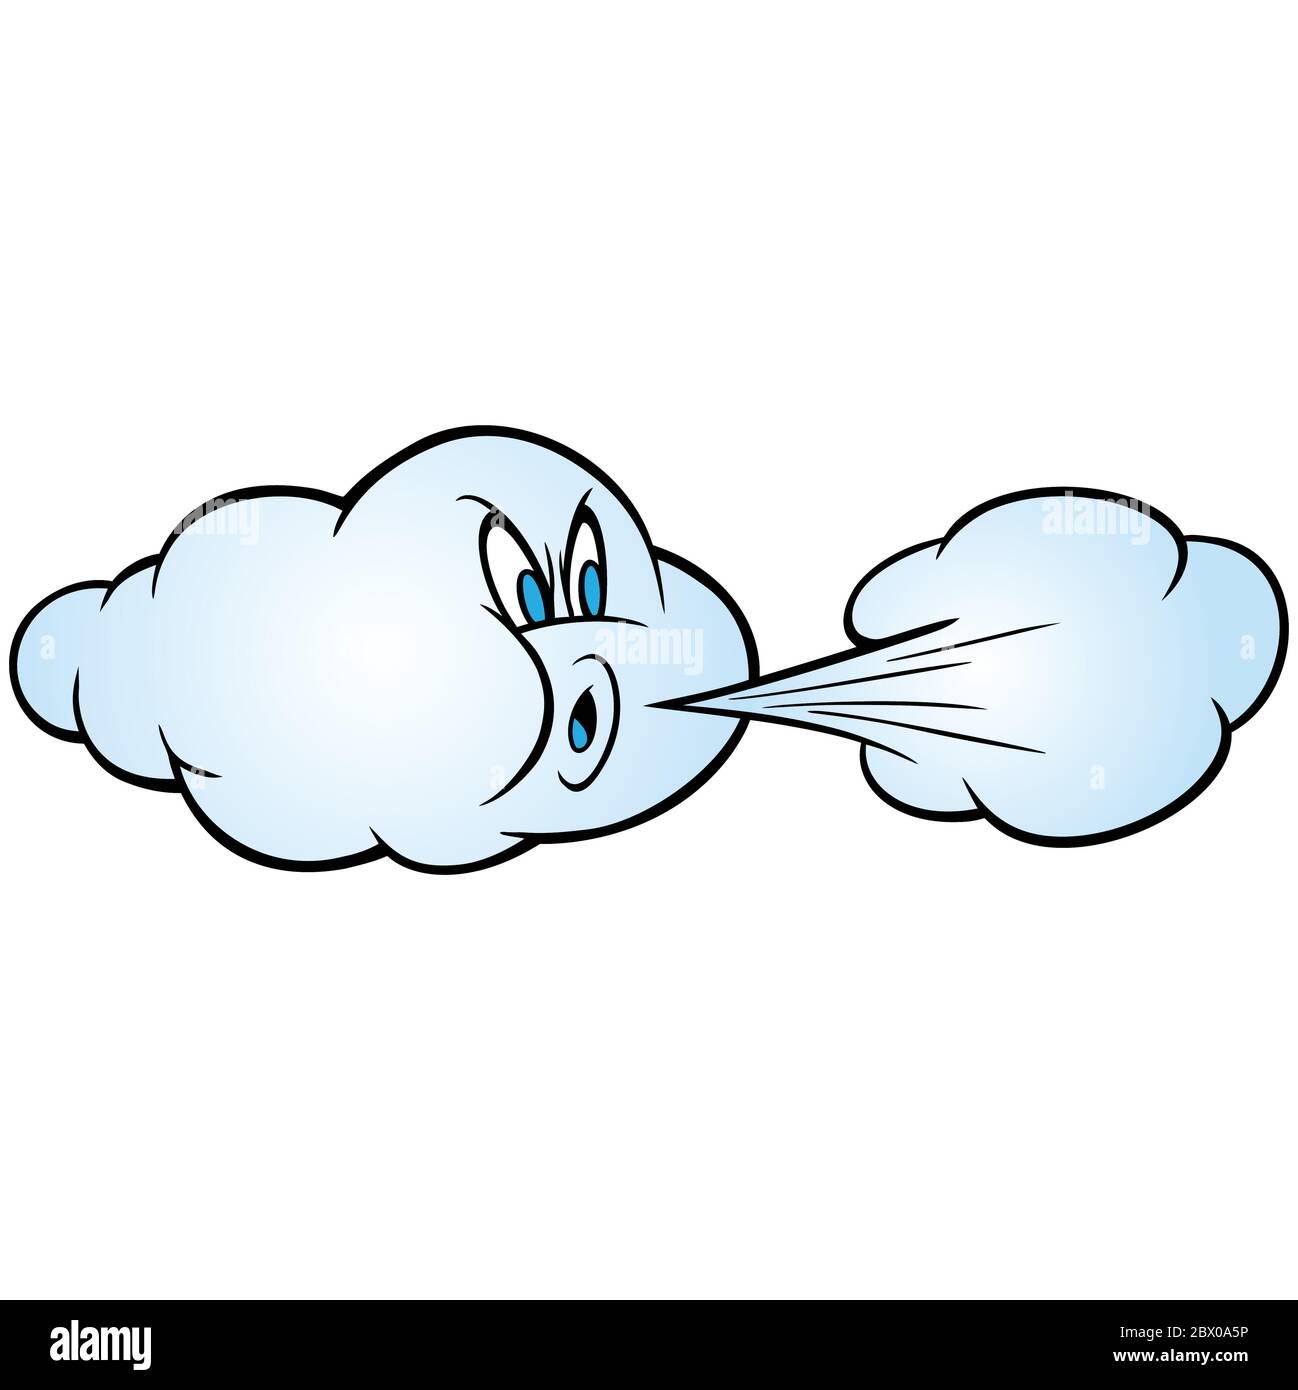 Wind weht - EINE Karikatur Illustration einer Wolke weht etwas kalte Luft  Stock-Vektorgrafik - Alamy